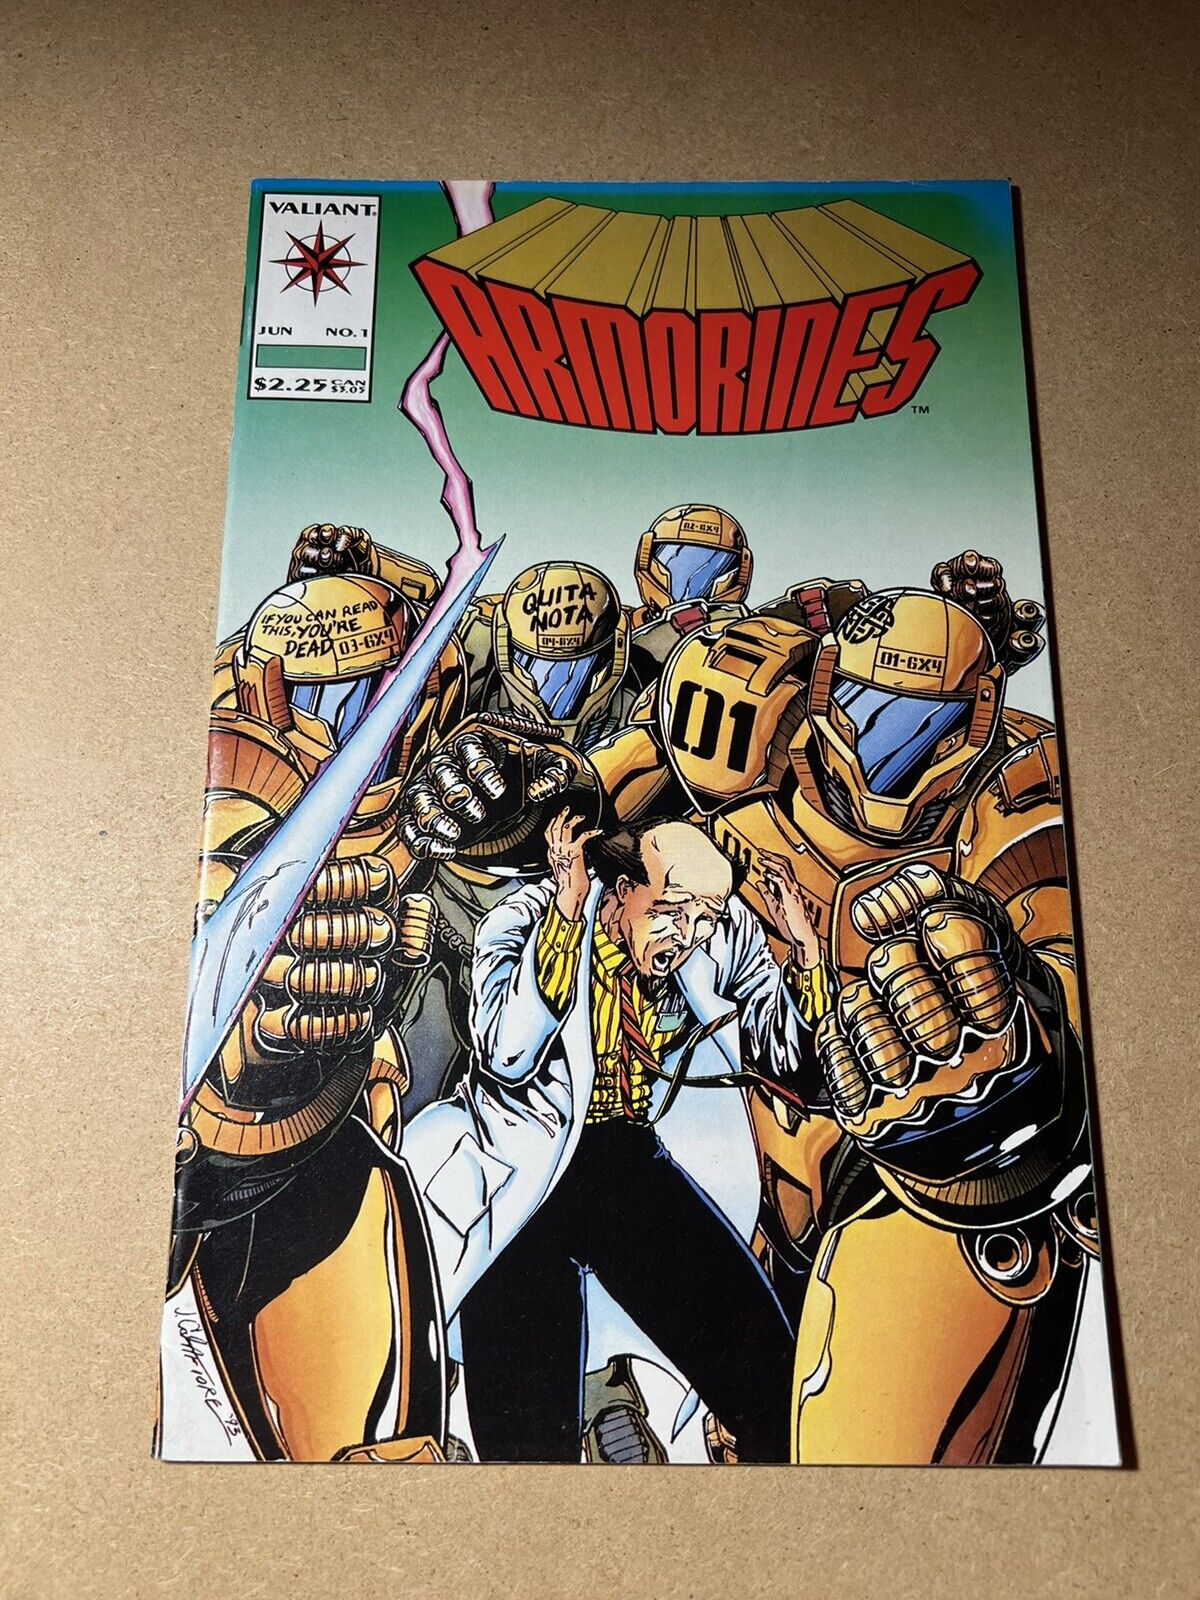 Armorines #1 Valiant Comics 1994